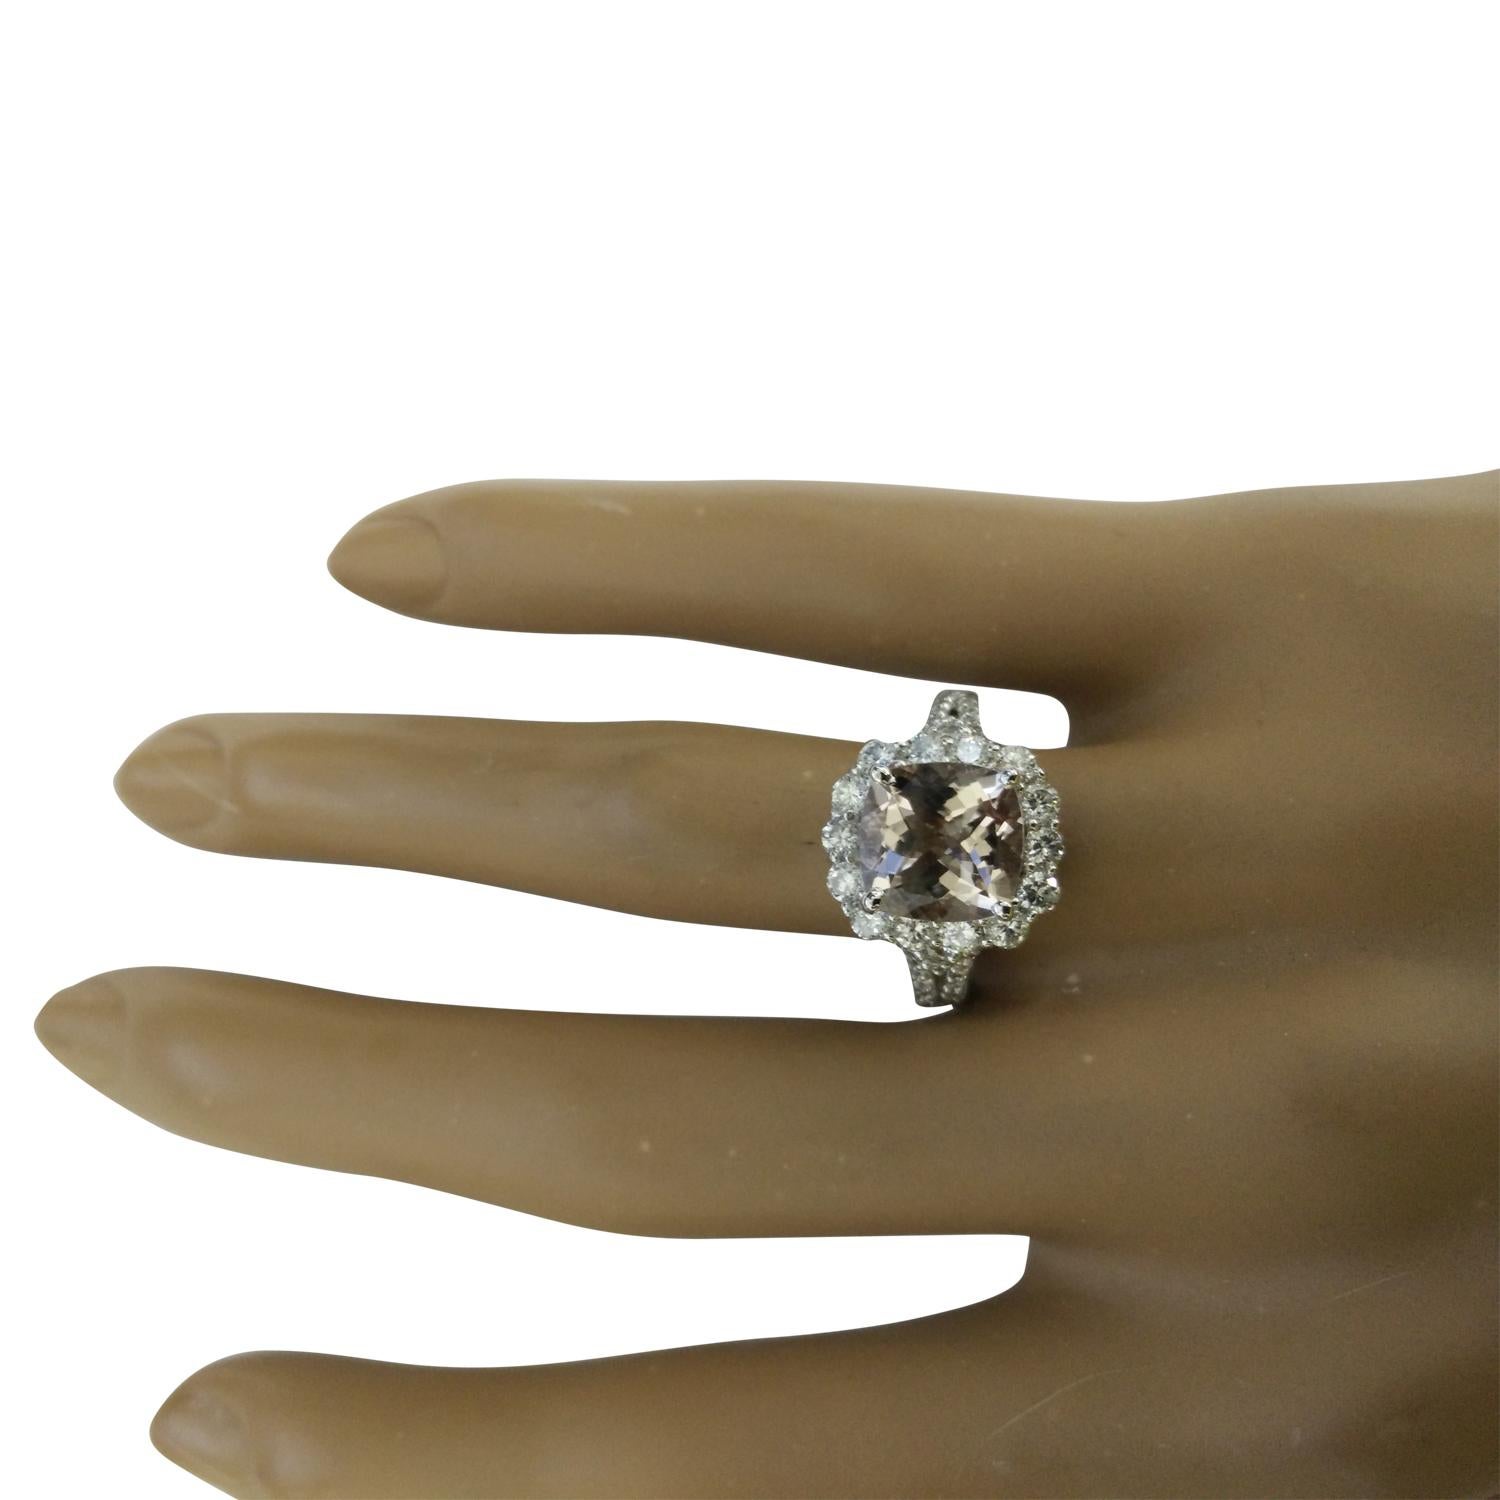 3.70 Carat Natural Morganite 14 Karat Solid White Gold Diamond Ring
Estampillé : 14K 
Poids total de l'anneau : 5 grammes 
Poids de la Morganite : 2.60 Carat (9.00x9.00 Millimètres)  
Poids du diamant : 1,10 carat (couleur F-G, pureté